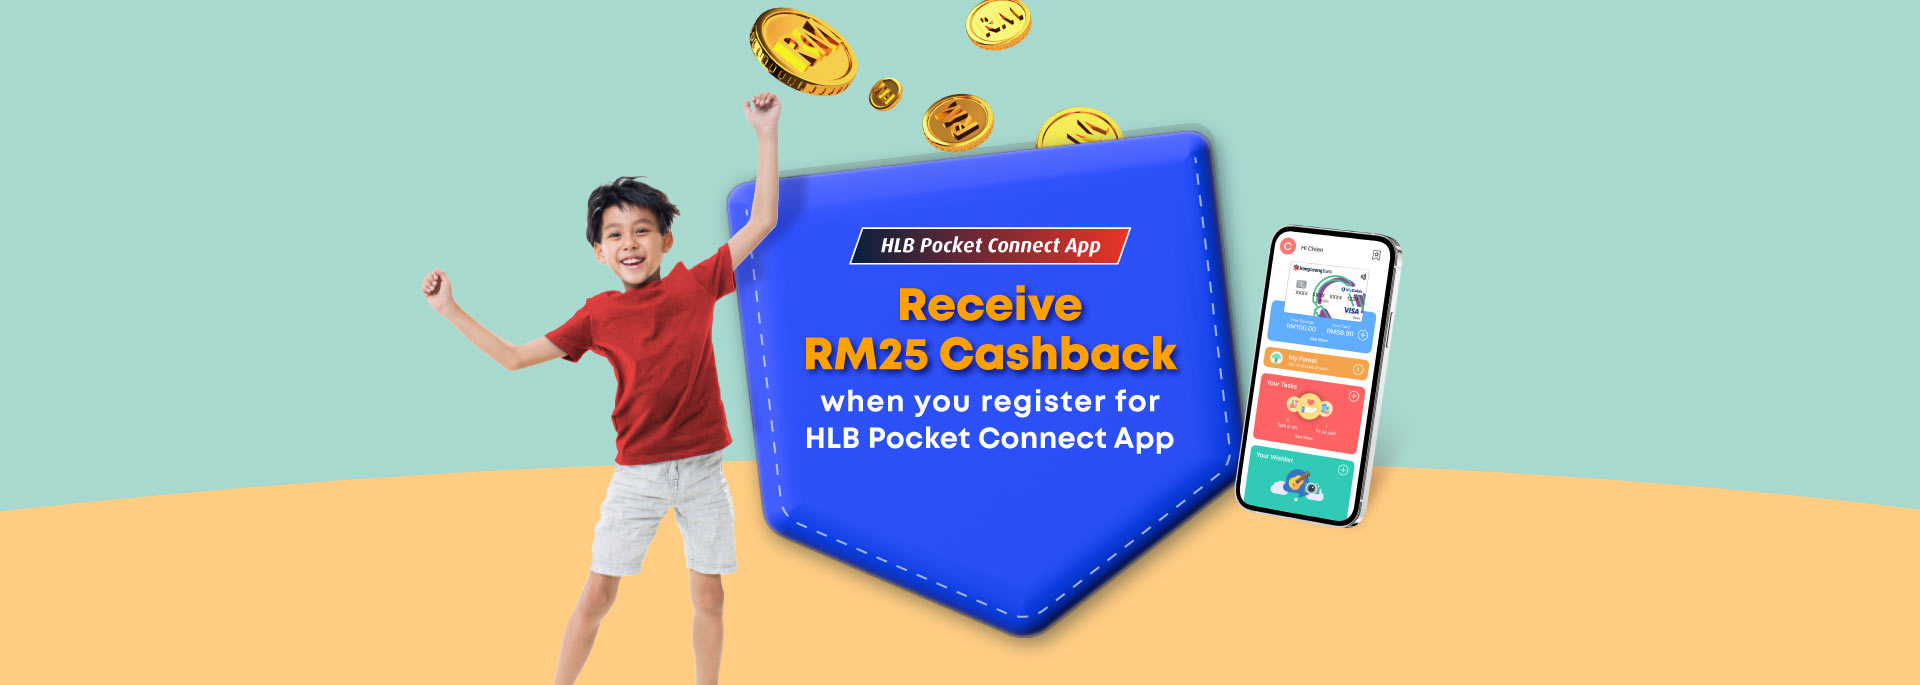 Receive RM25 Cashback when you register for HLB Pocket Connect App